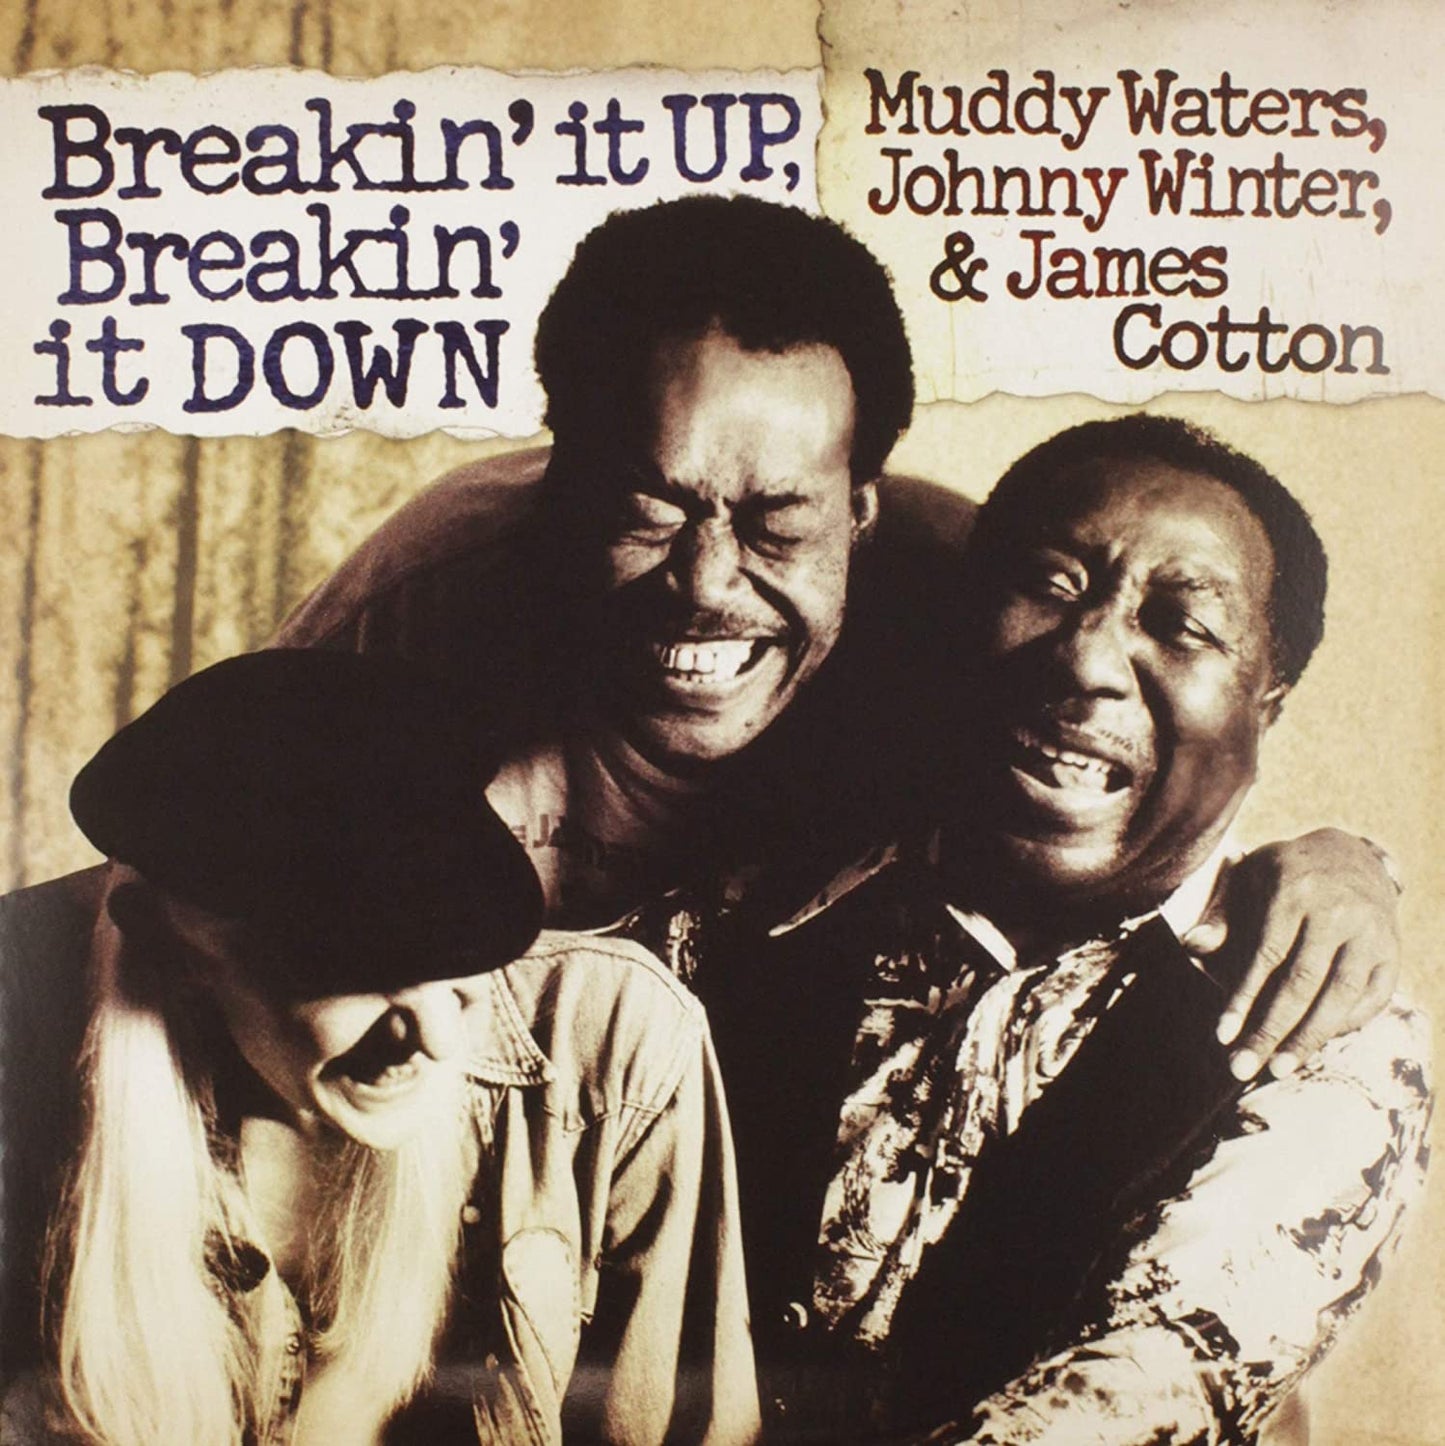 Waters, Winter, Cotton/Breakin' It Up, Breakin' It Down (2LP) [LP]